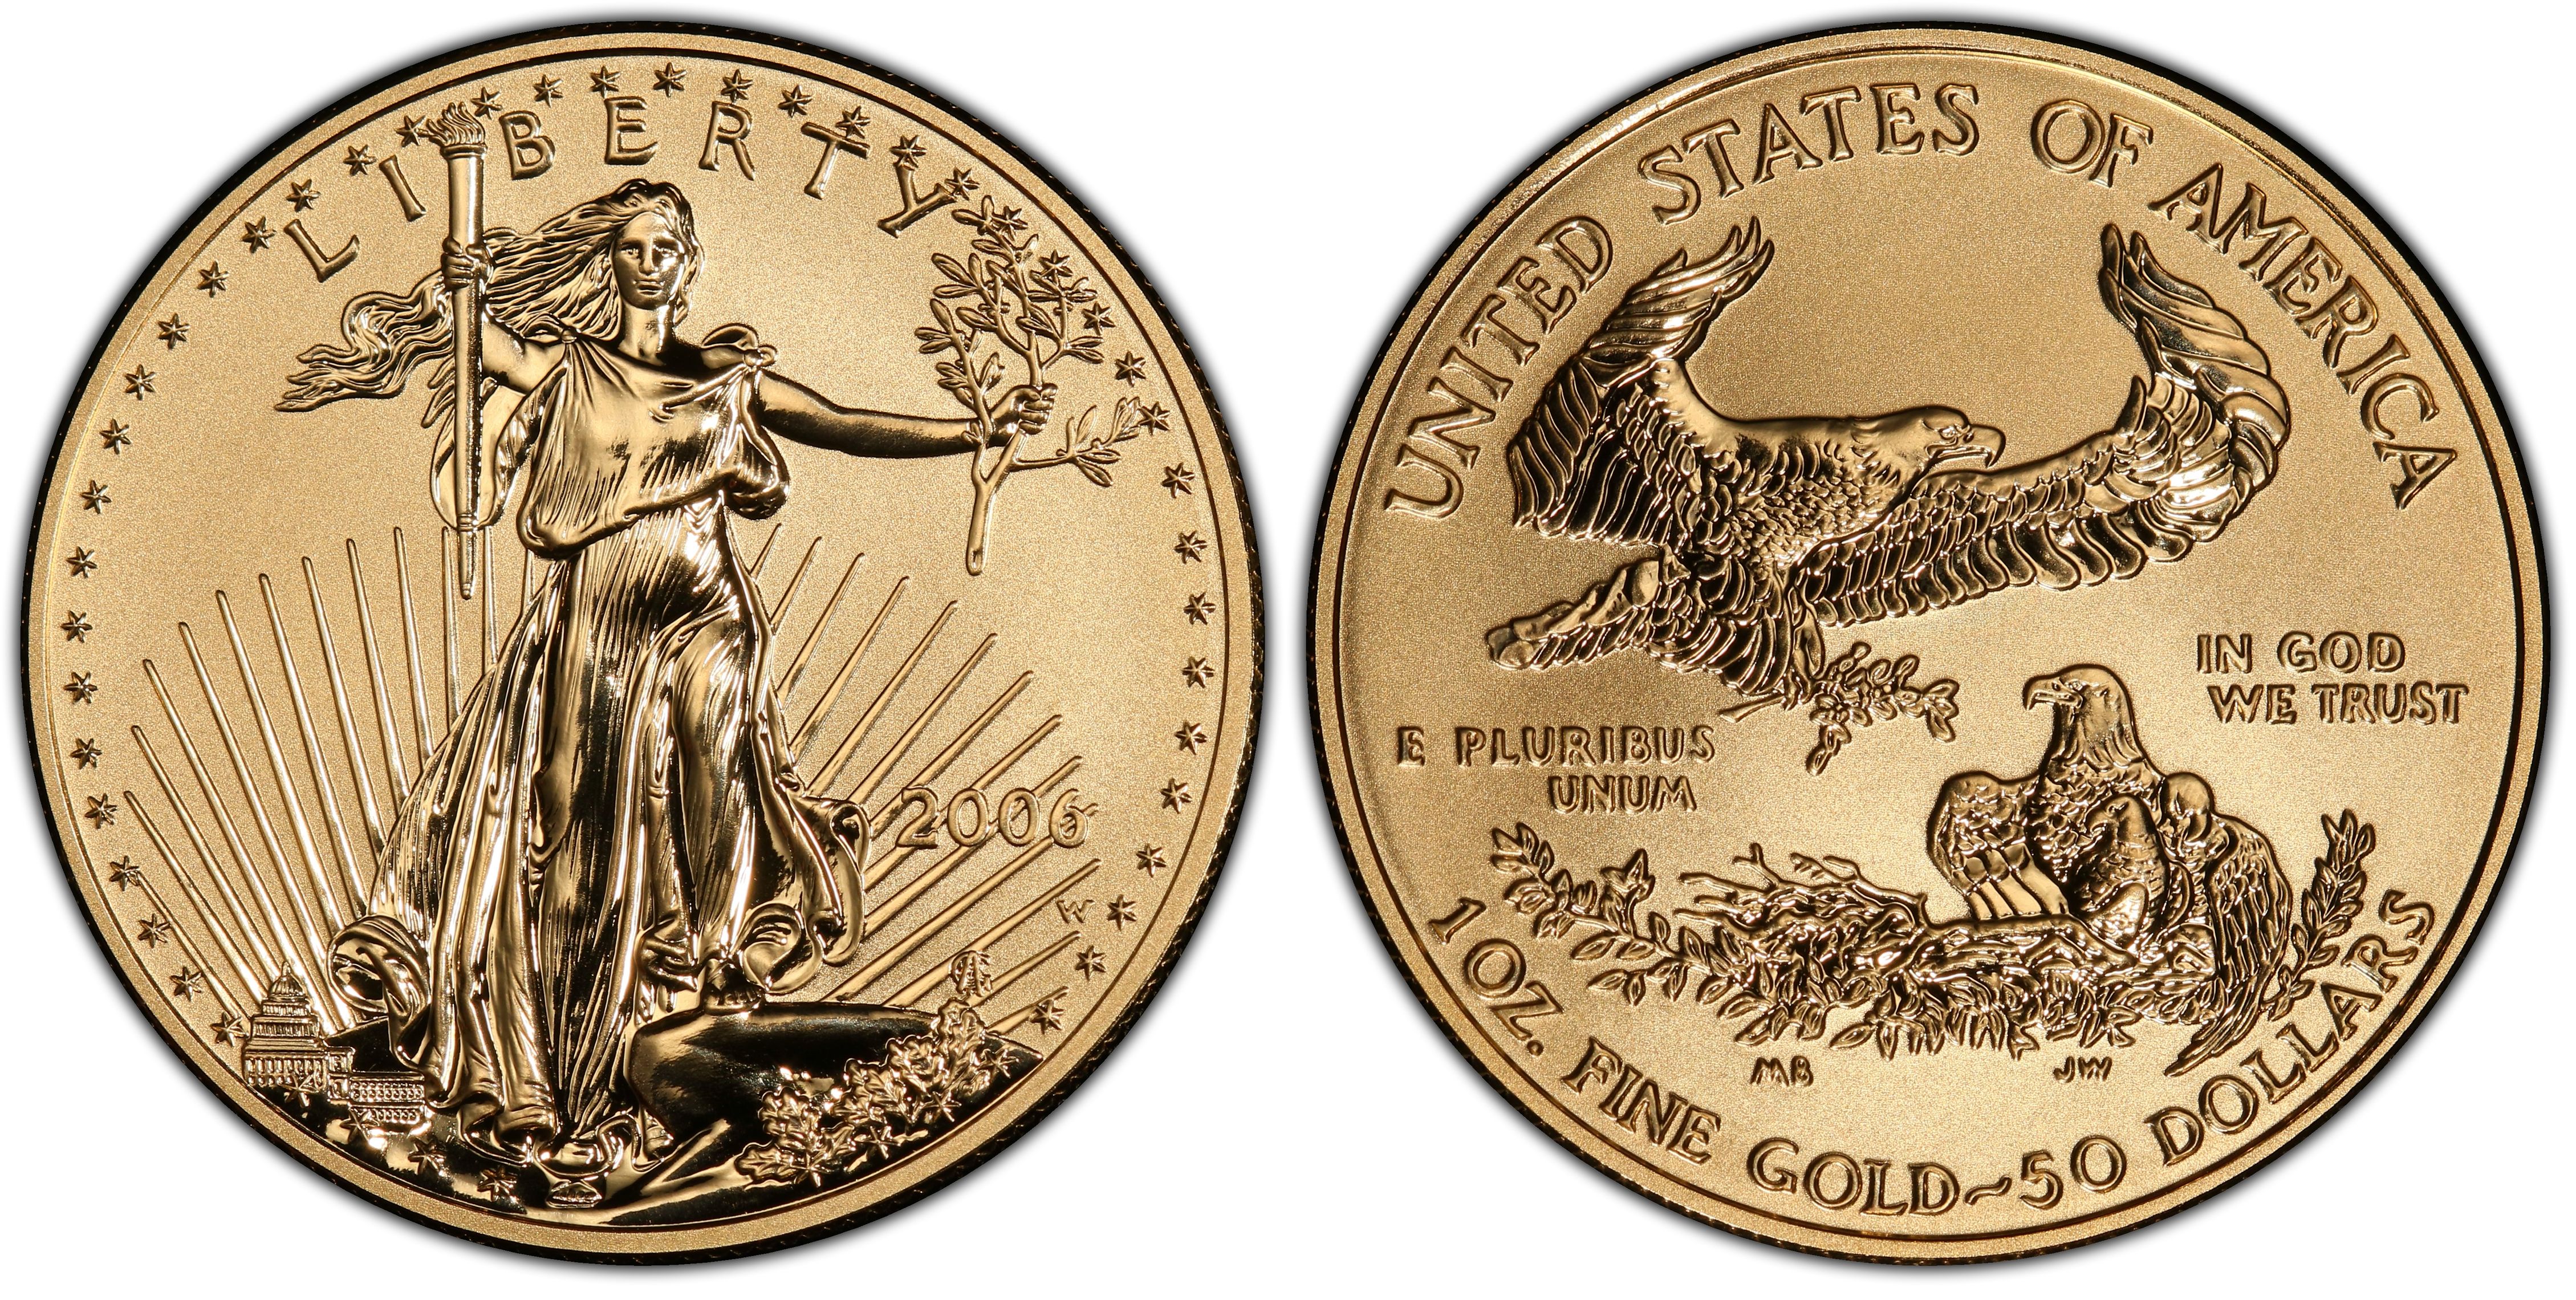 2006-W $50 Eagle-20th Anniv. Rev PR (Proof) Gold Eagles - PCGS 